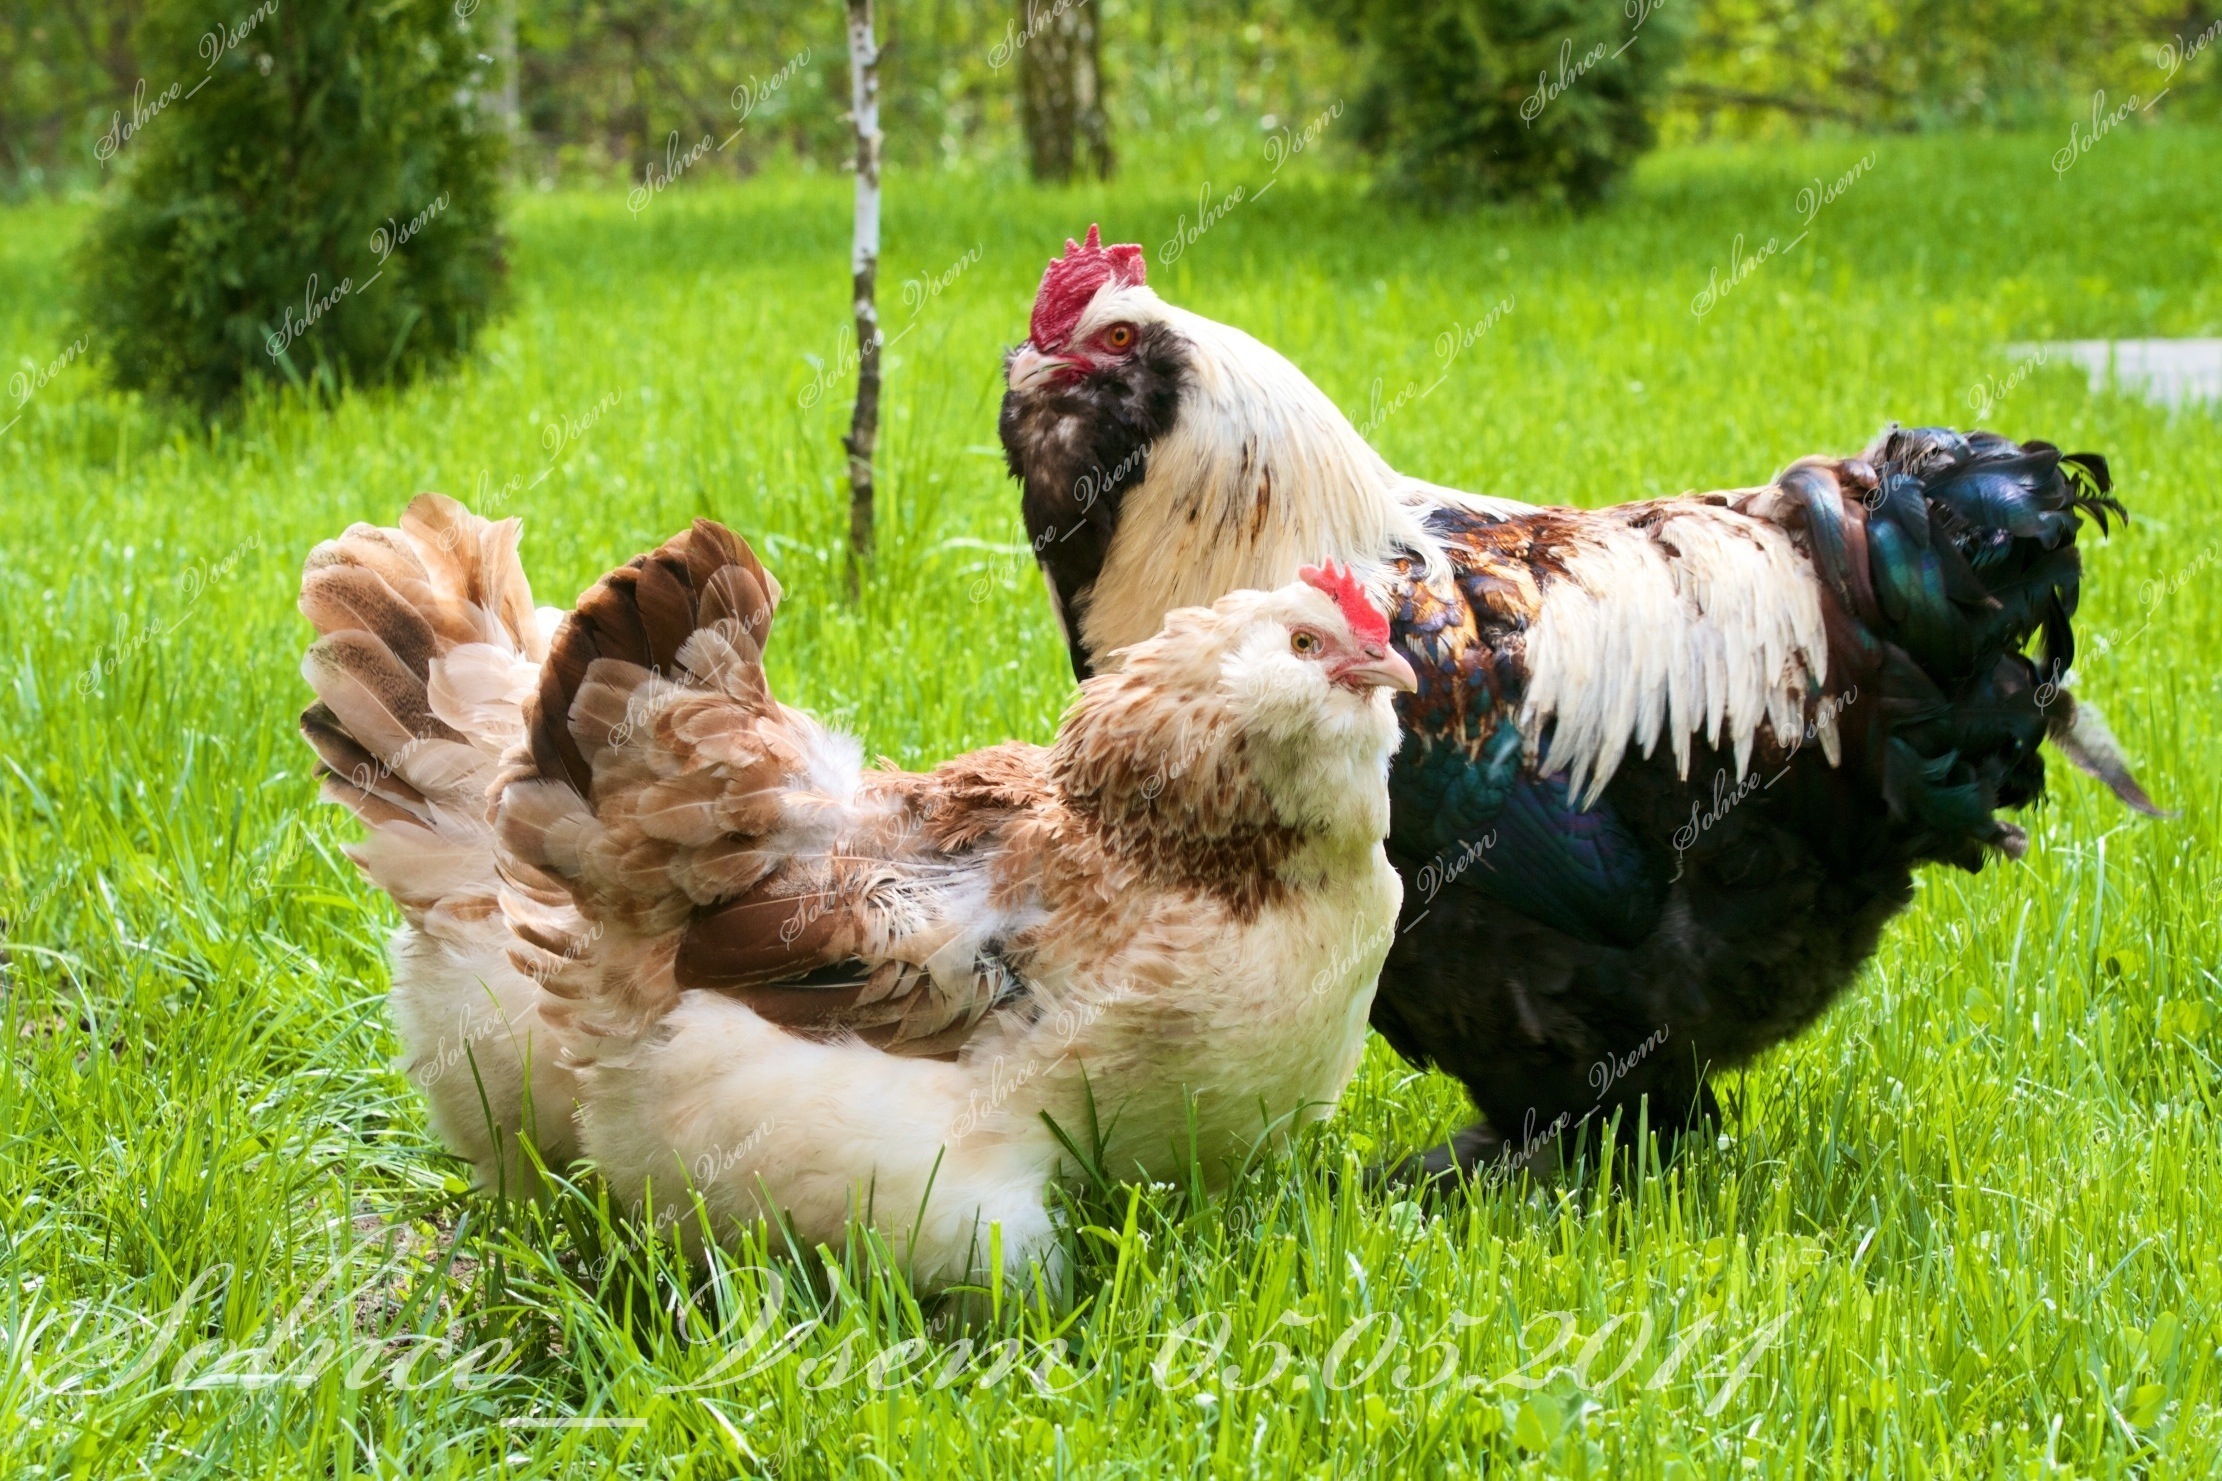 Фавероль - мясо-яичная порода кур. Описание, содержание и выращивание, правила инкубации